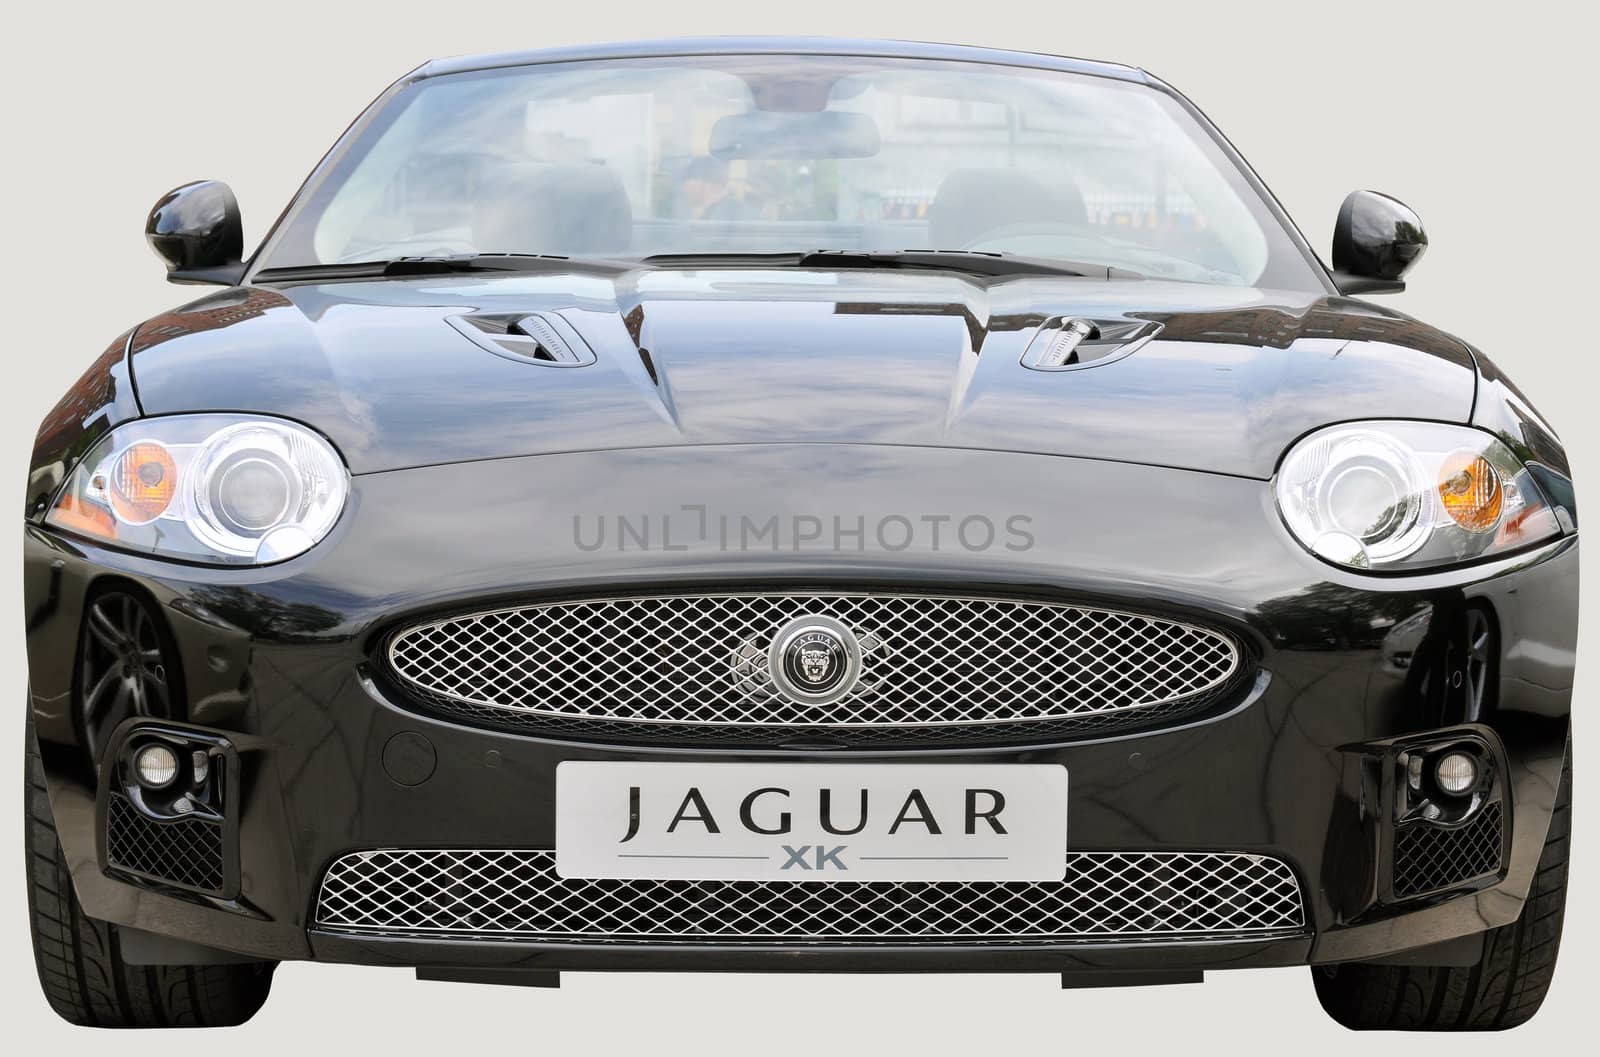 Jaguar sportscar